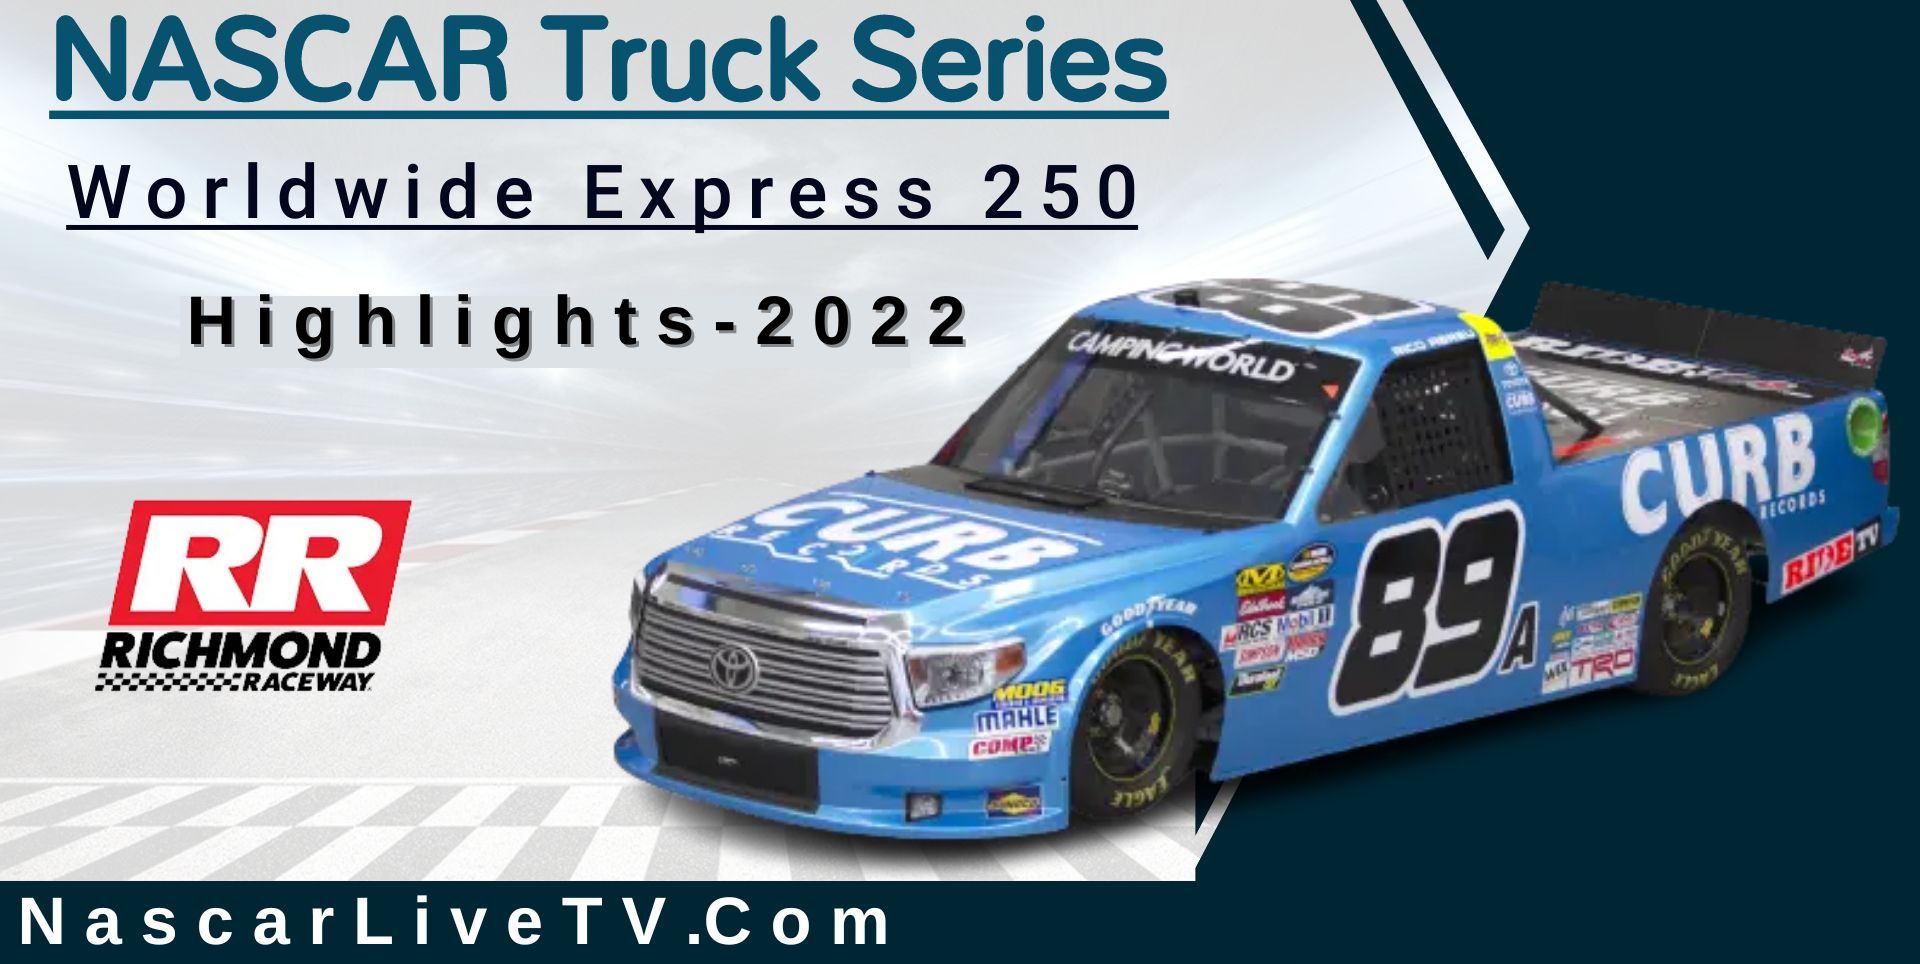 Worldwide Express 250 Highlights NASCAR Truck 2022